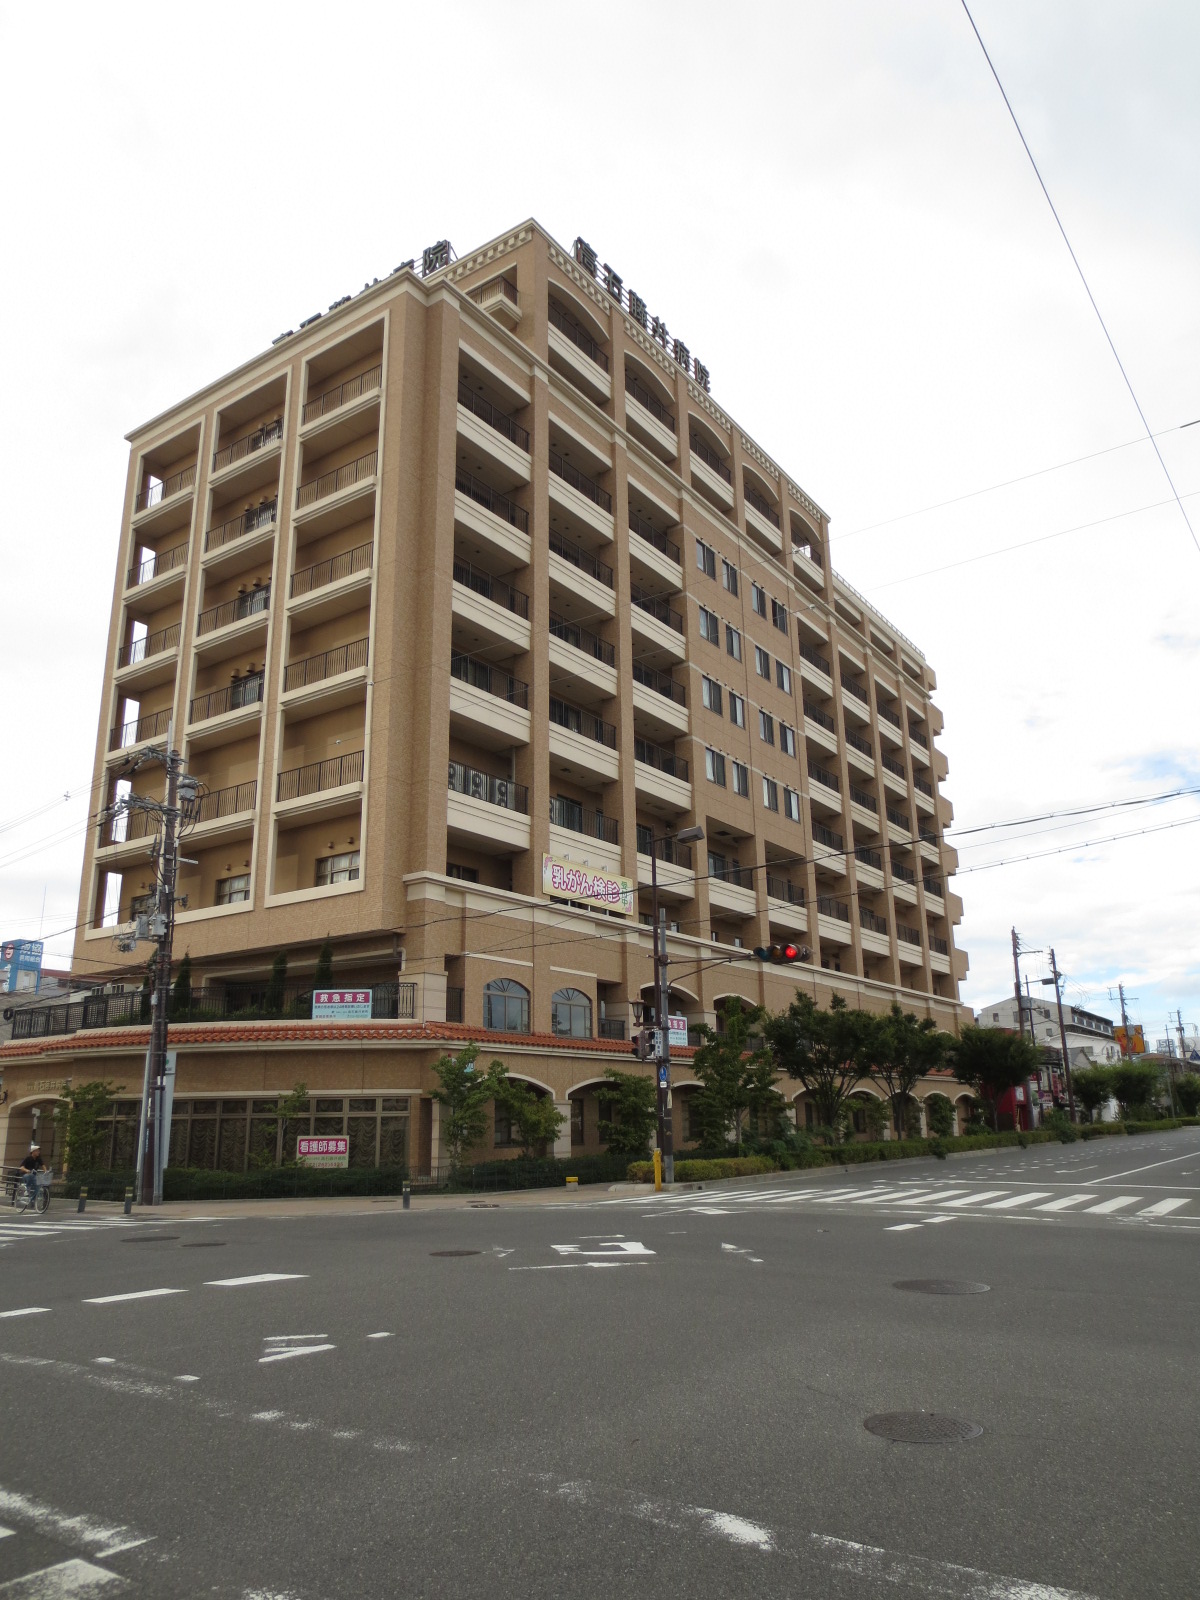 Hospital. 249m until the medical corporation YoShigerukai Takaishi Fujii hospital (hospital)